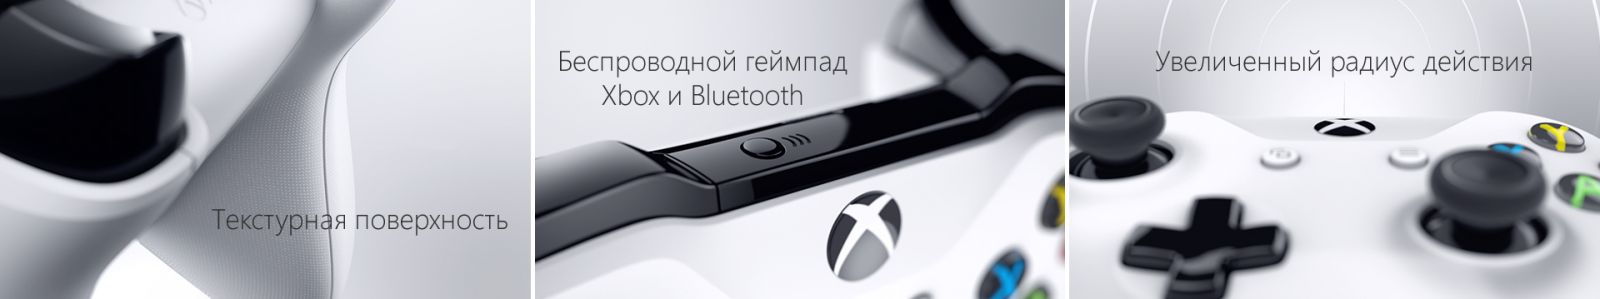 Xbox One S 1TB с двумя джойстиками + игра Mortal Kombat XL image7